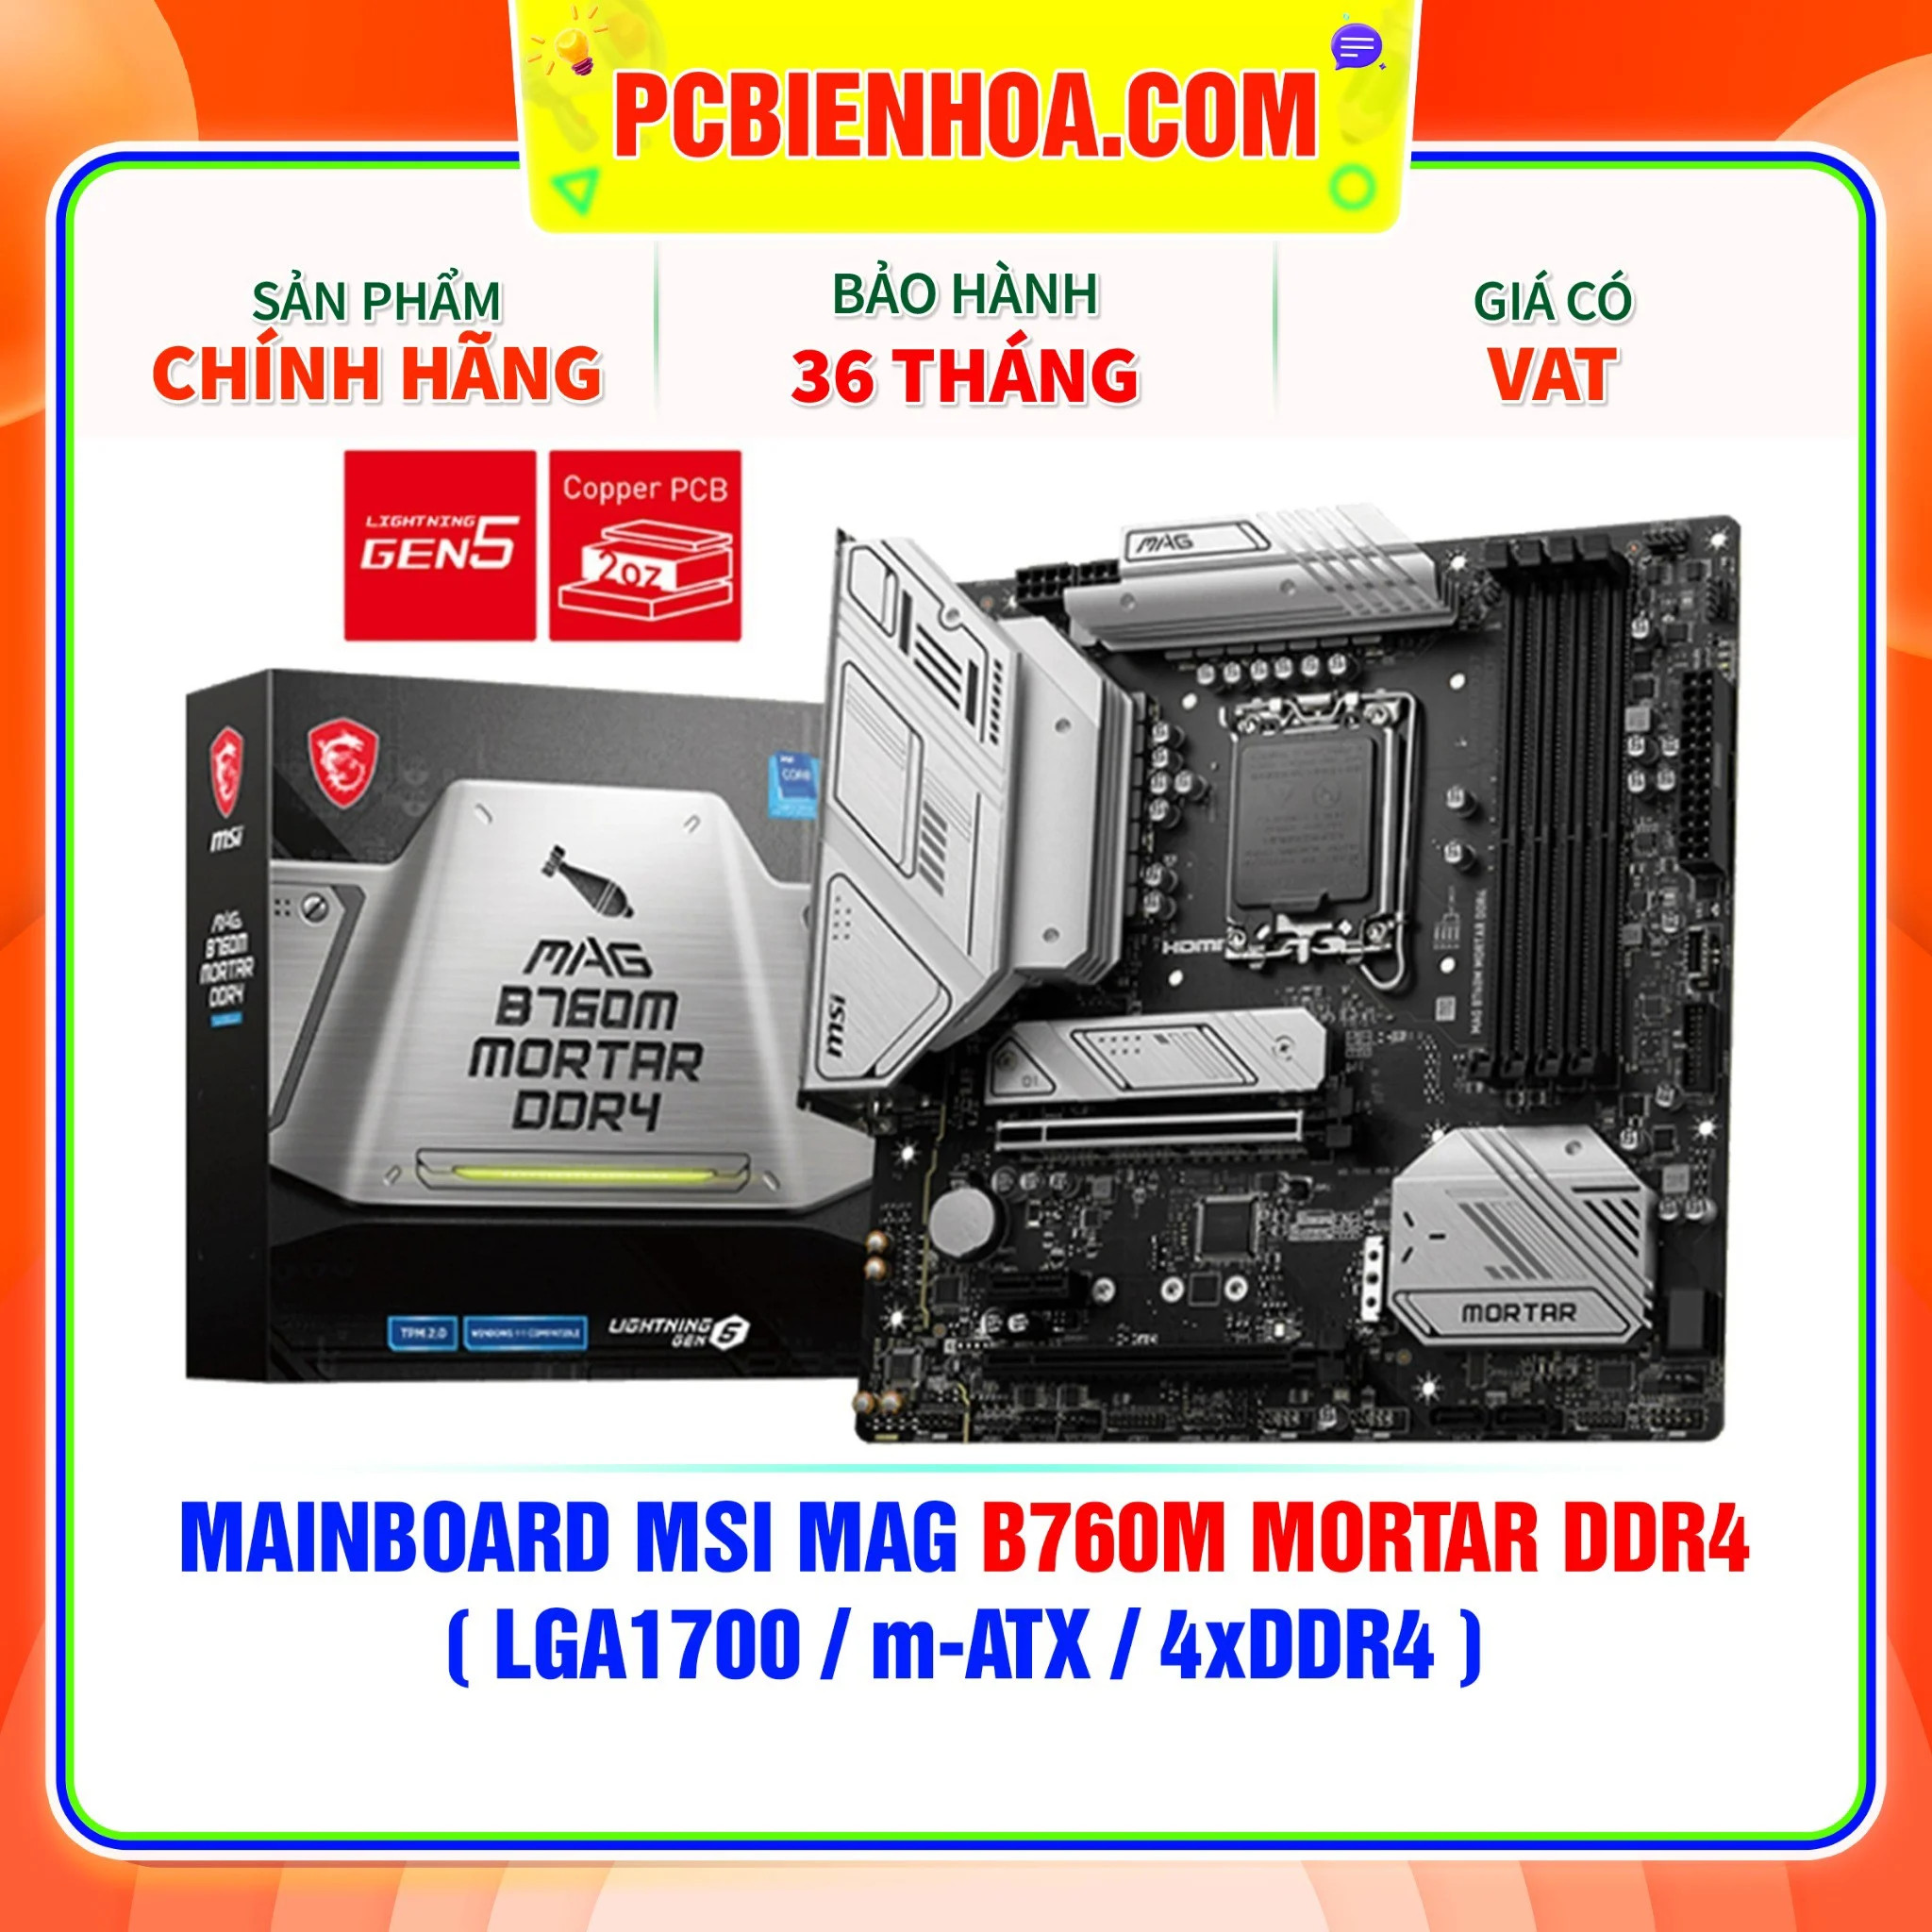 MAINBOARD MSI MAG B760M MORTAR DDR4  LGA1700 M-ATX 4XDDR4